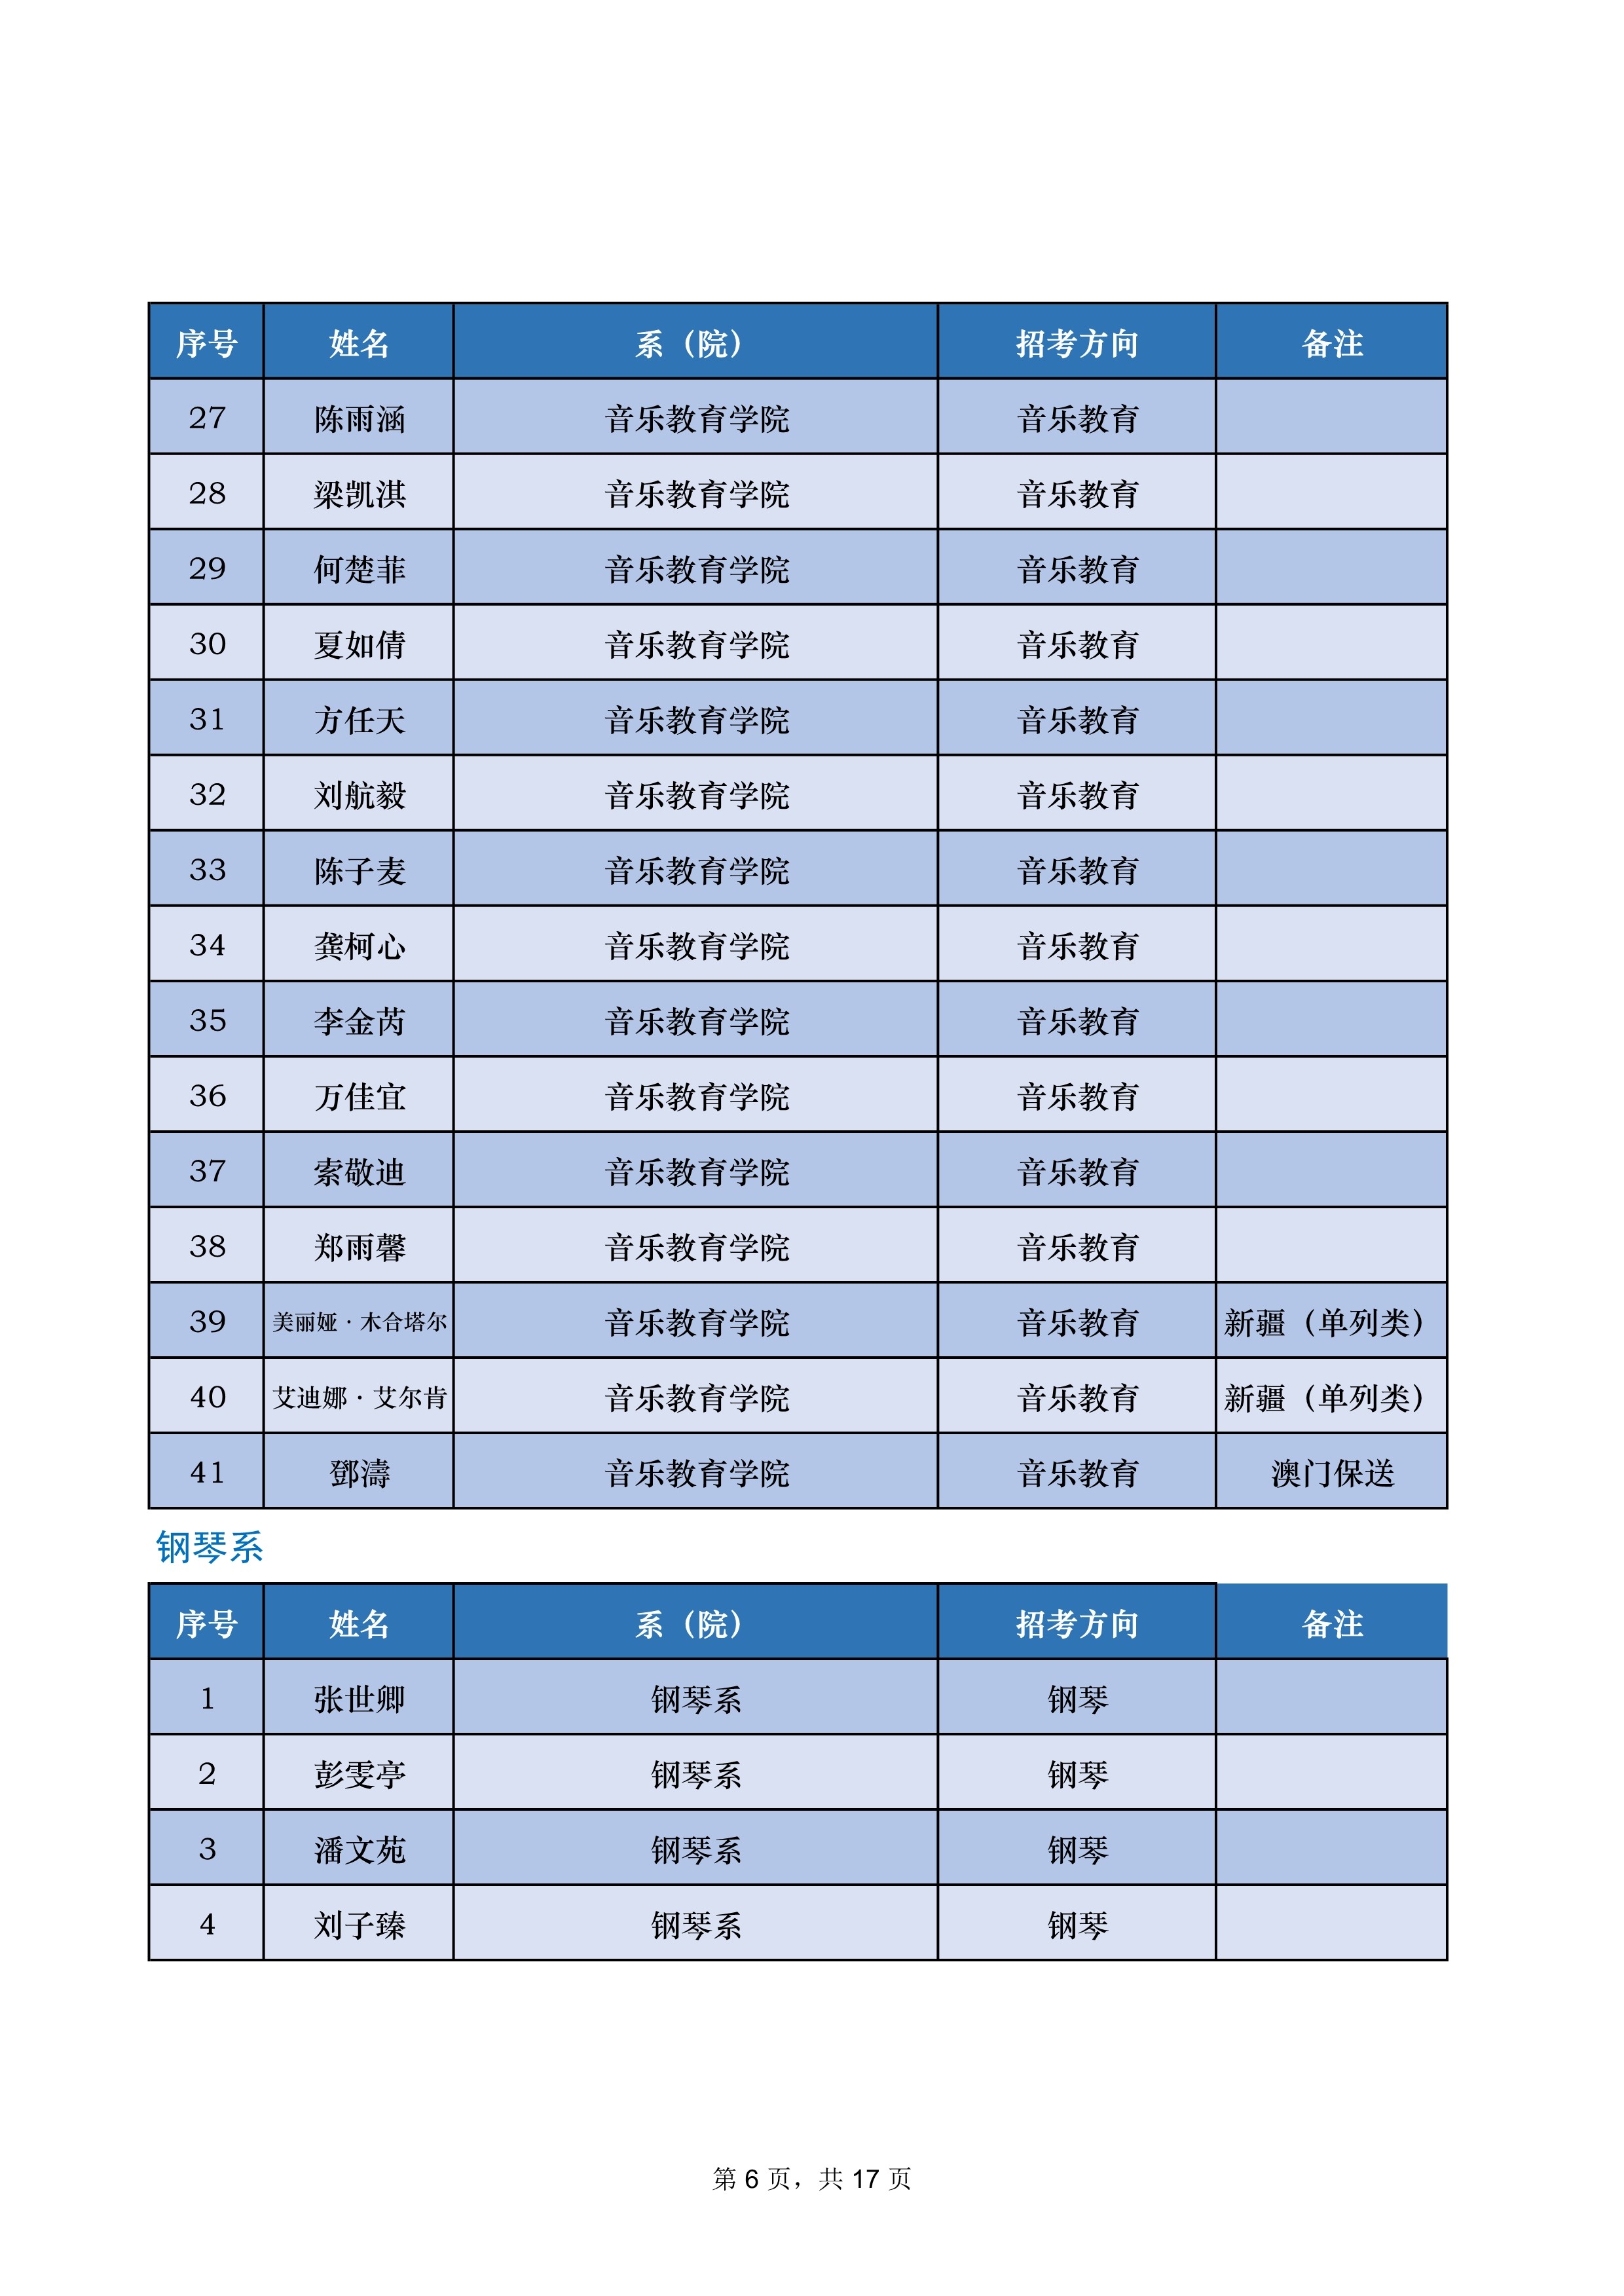 中央音乐学院2022年本科招生录取名单【不含上海考生和香港中学文凭考生】_6.jpg